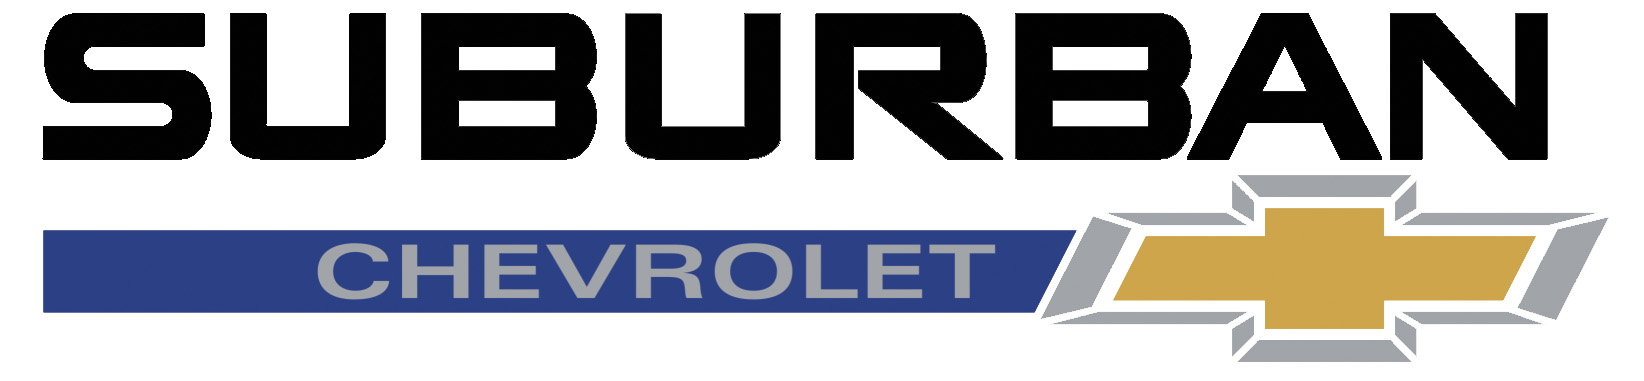 Suburban Chevrolet company logo